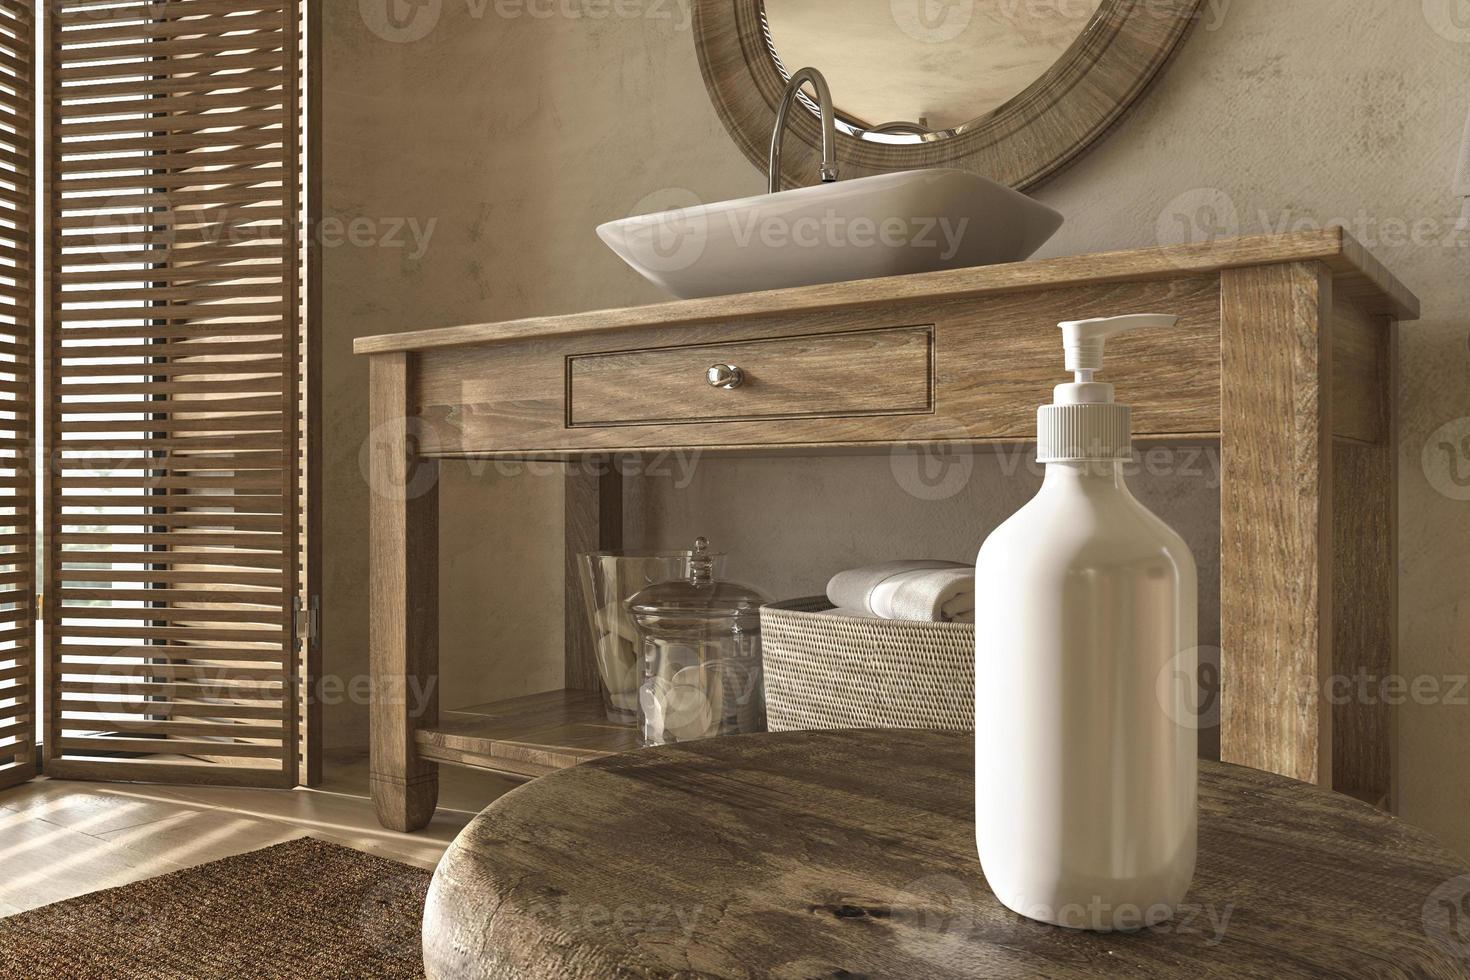 natuurlijke cosmetische product display badkamer interieur achtergrond in boho-stijl. Scandinavische houten meubelen. 3D-rendering illustratie. foto